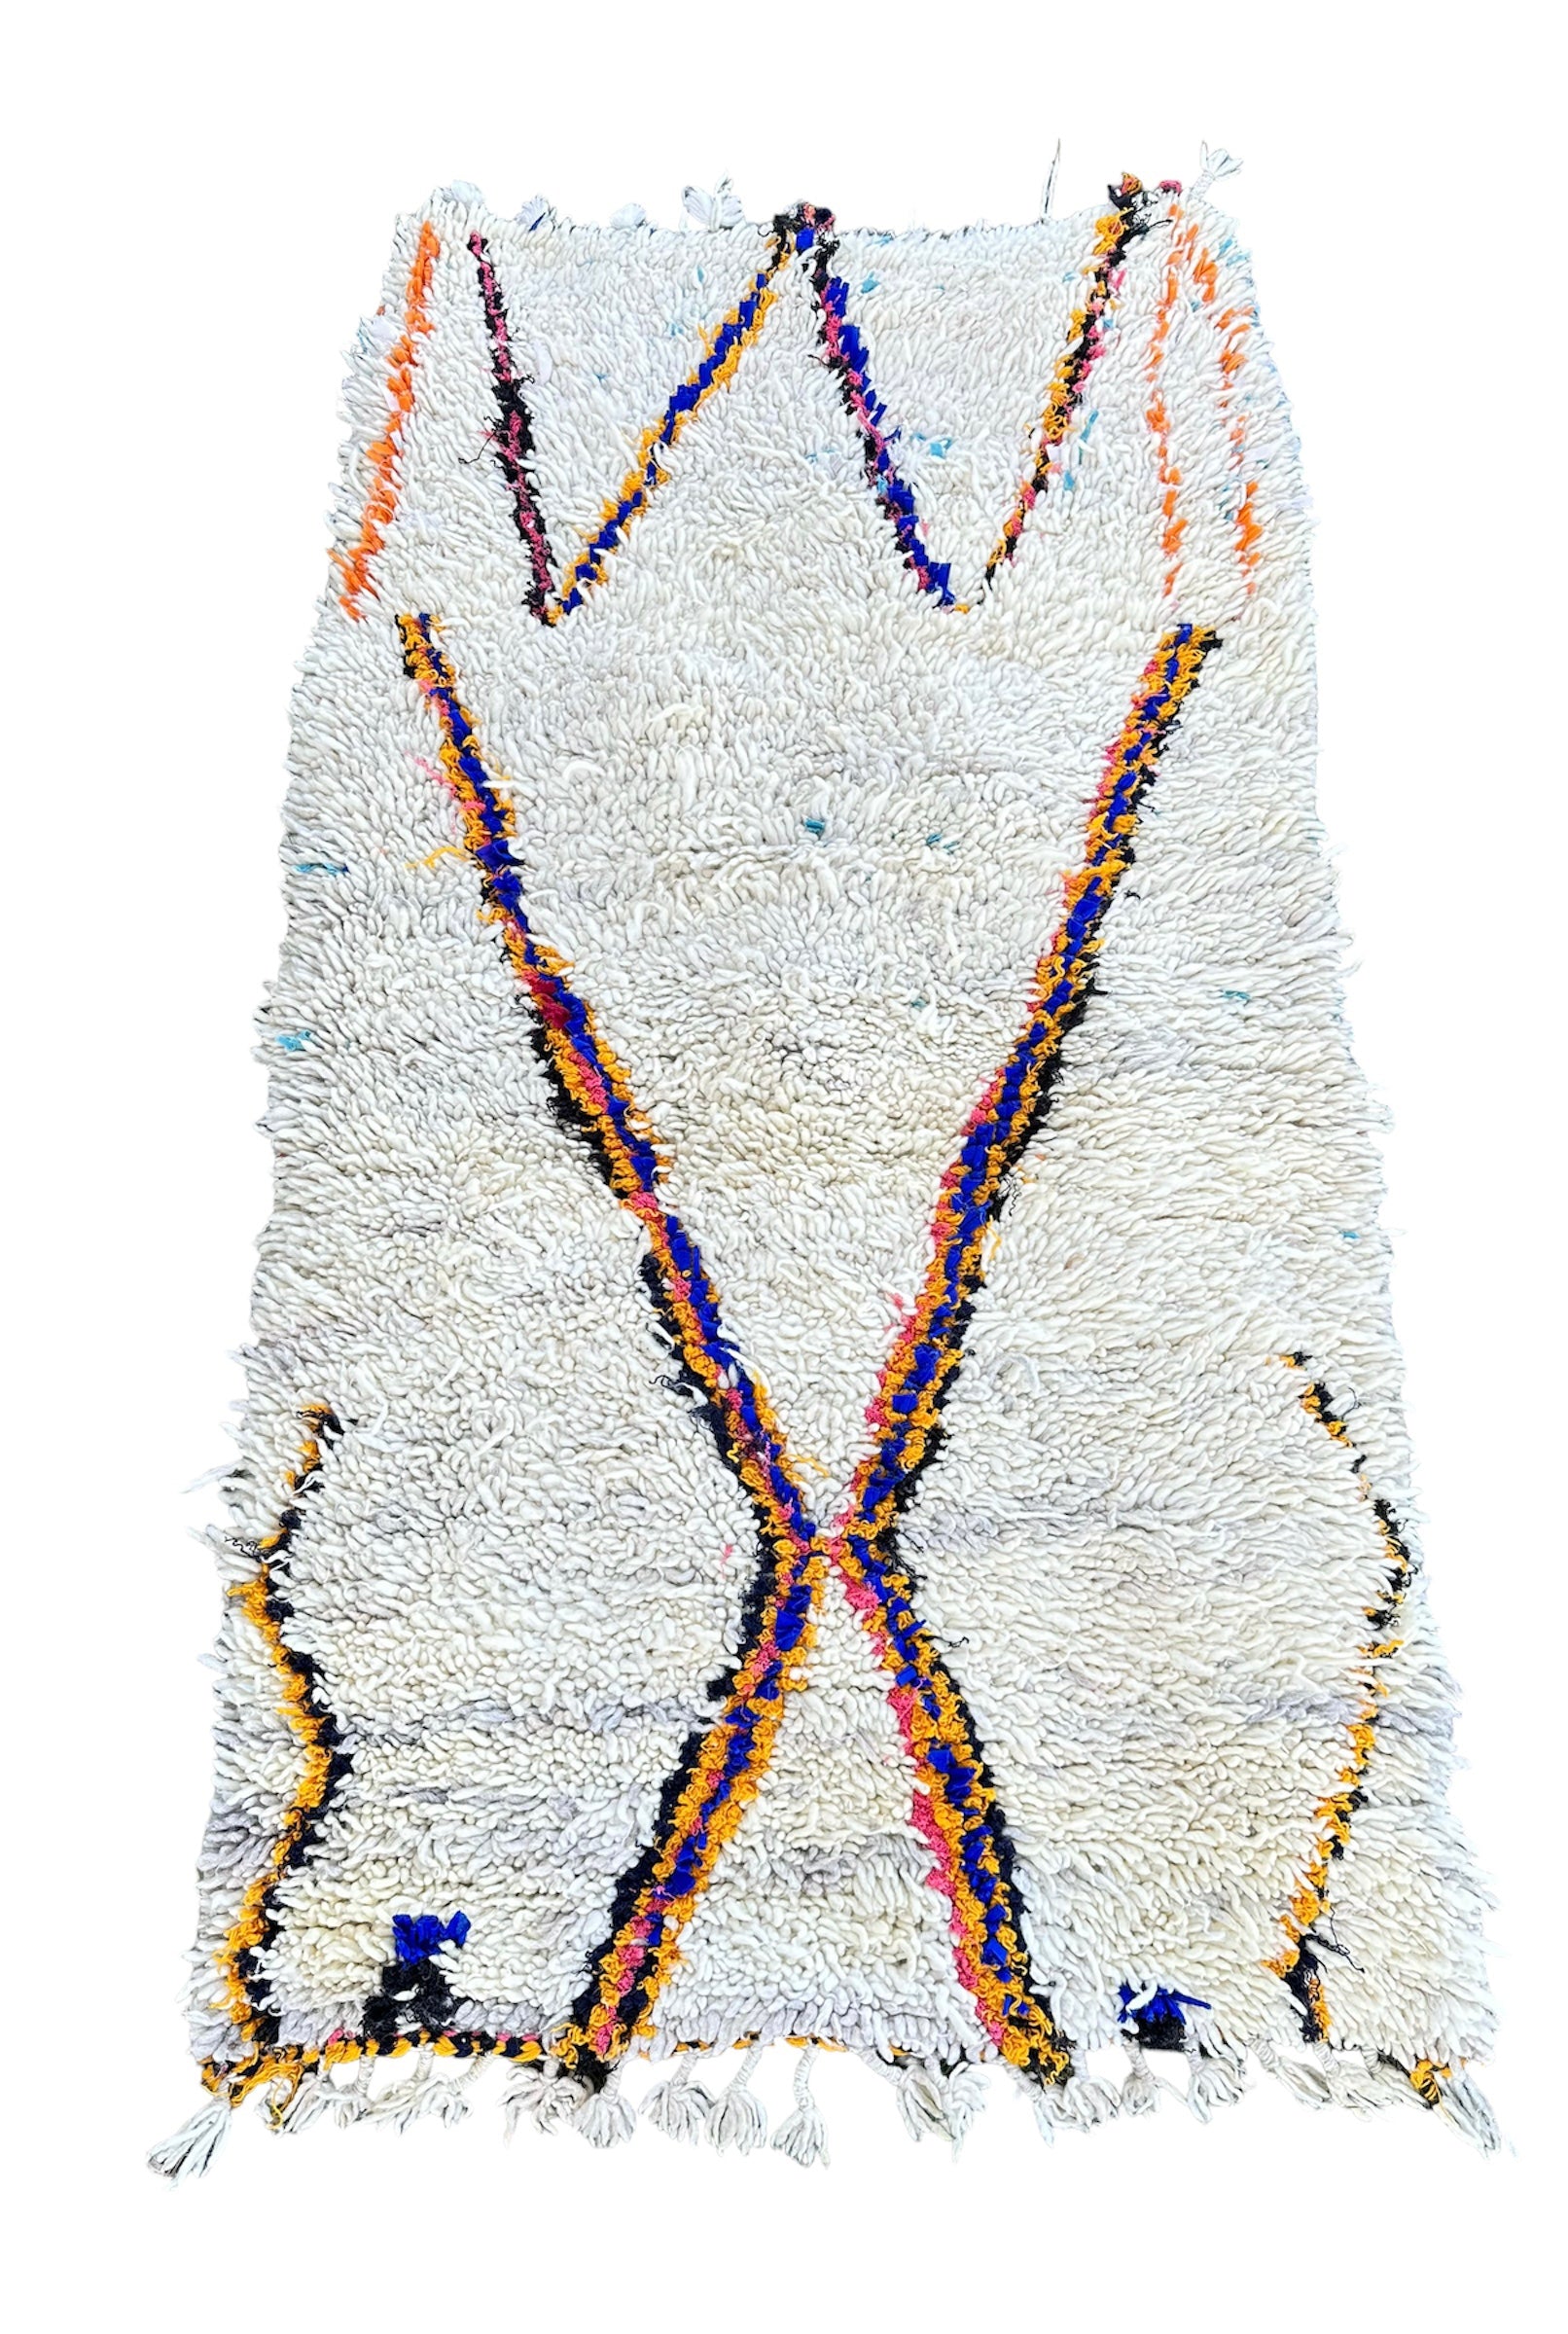 Beni Quarain-tæpper tynde striber i gul, blå, lysrød og sort